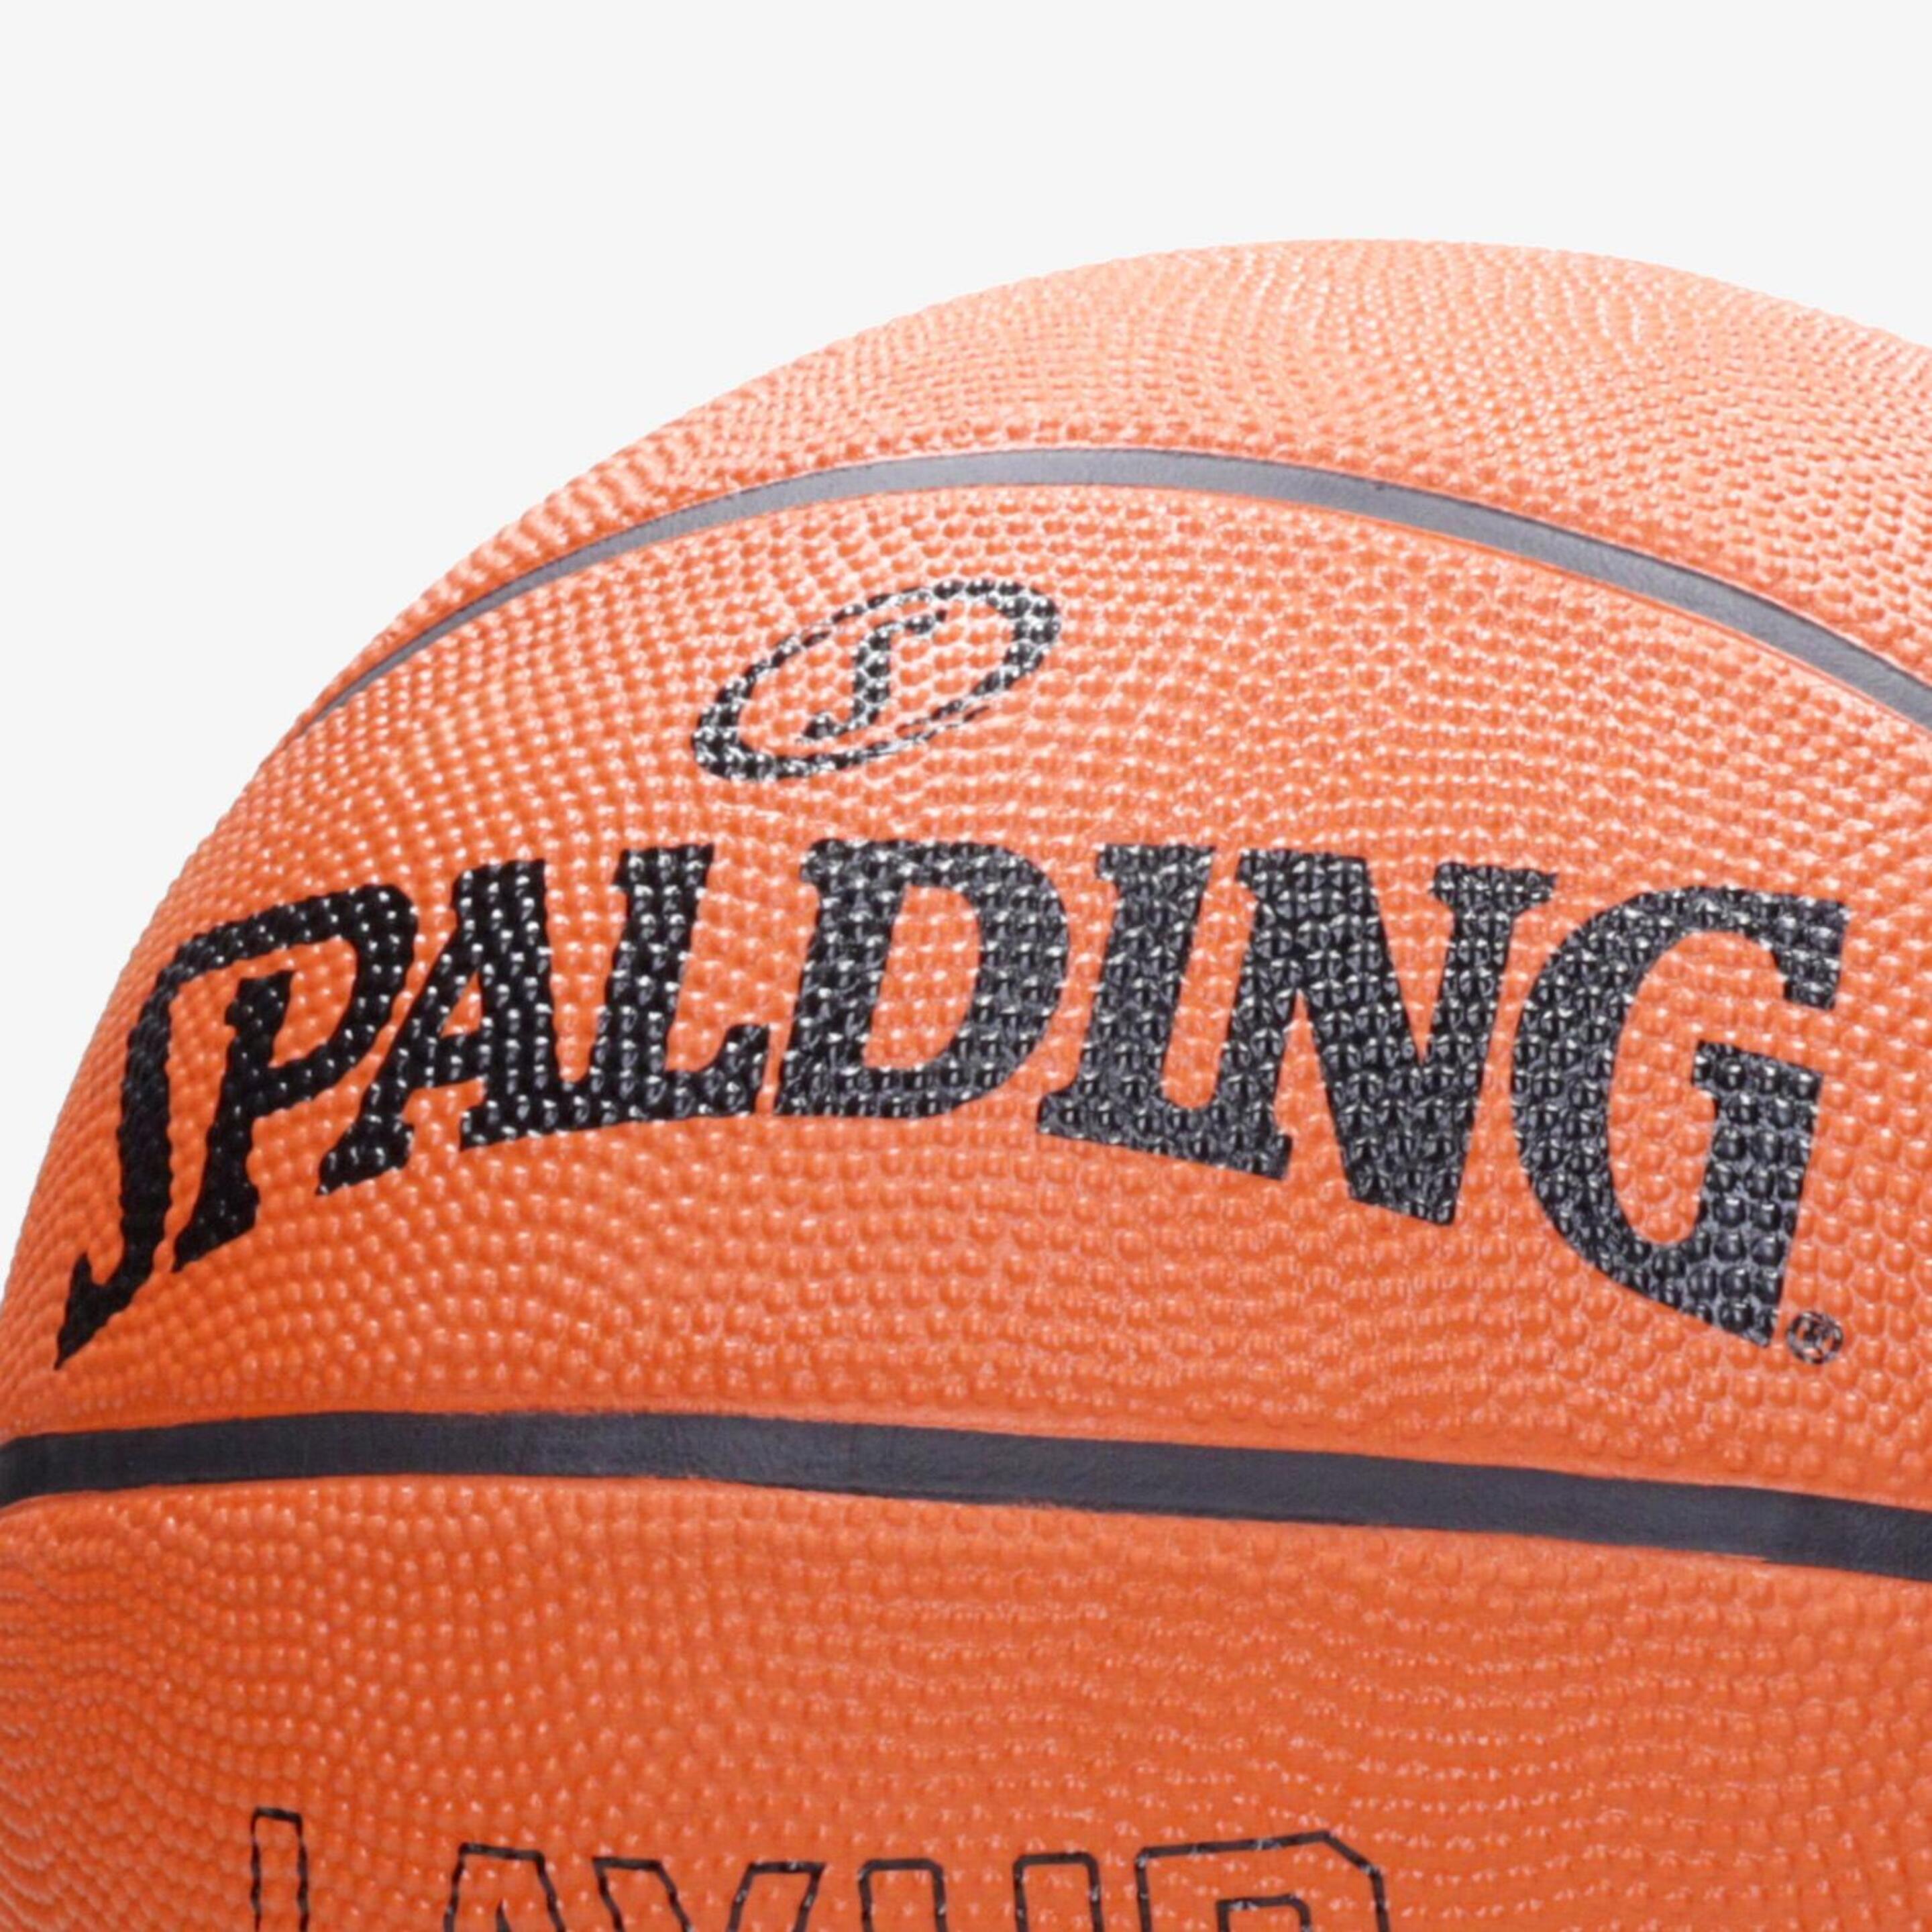 Spalding Layup - Naranja - Balón Baloncesto  MKP